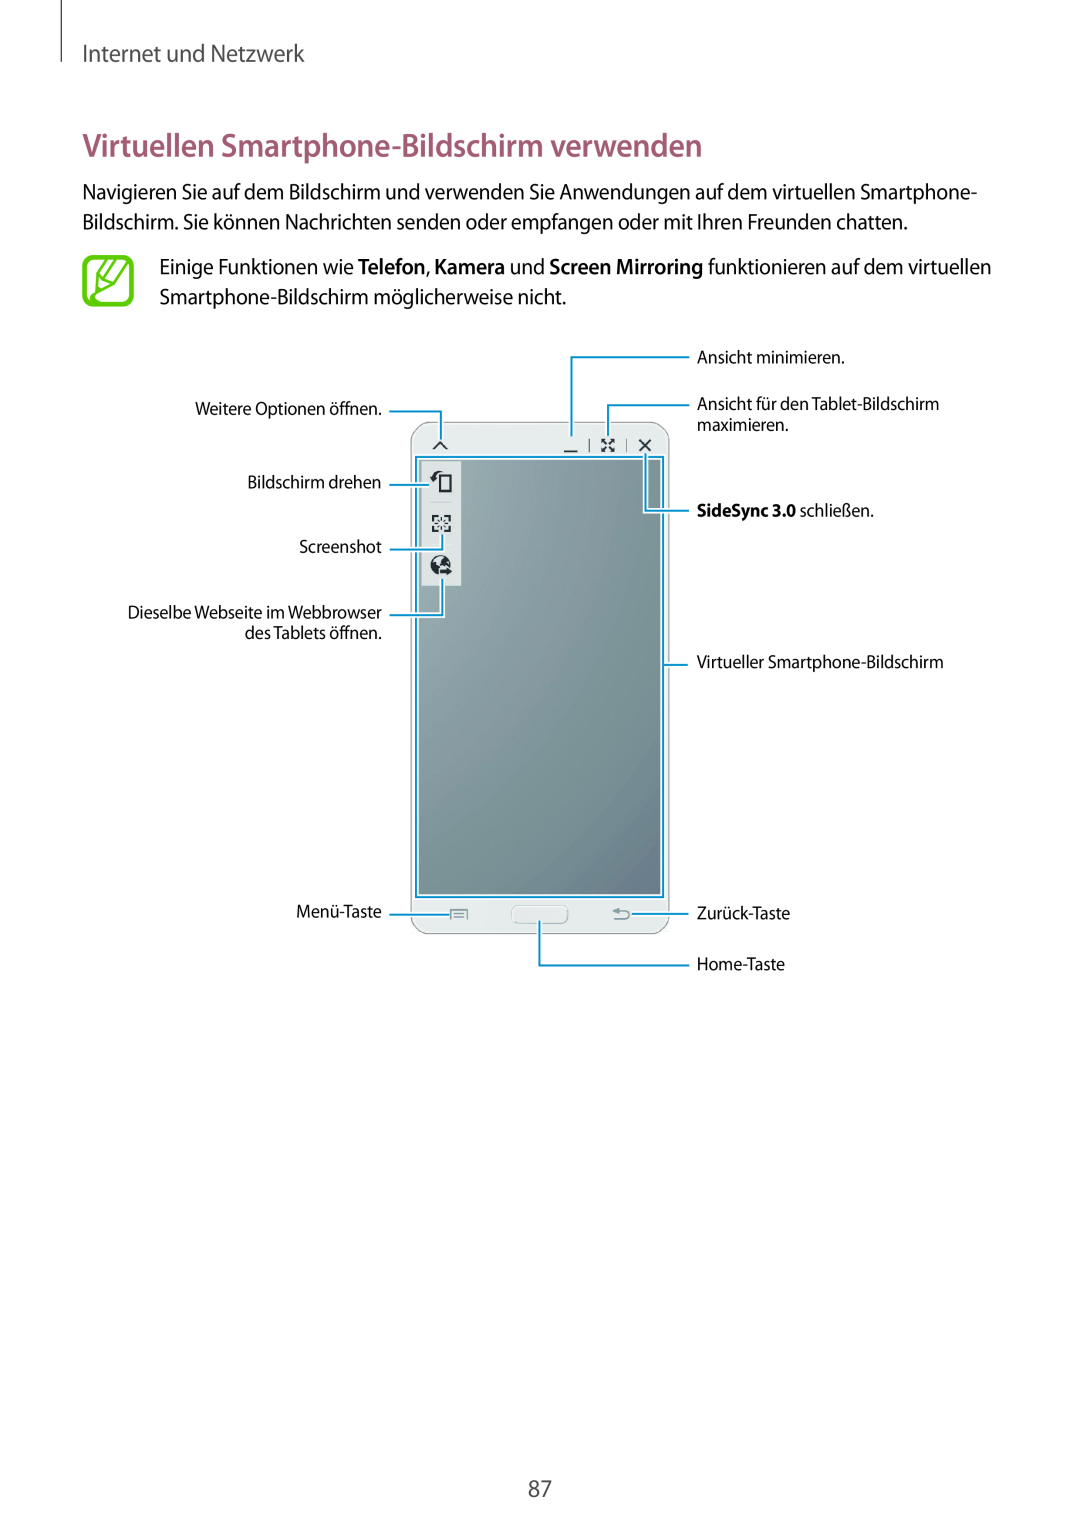 Samsung SM-P9000ZWATUR Virtuellen Smartphone-Bildschirm verwenden, Internet und Netzwerk, Ansicht minimieren, Menü-Taste 